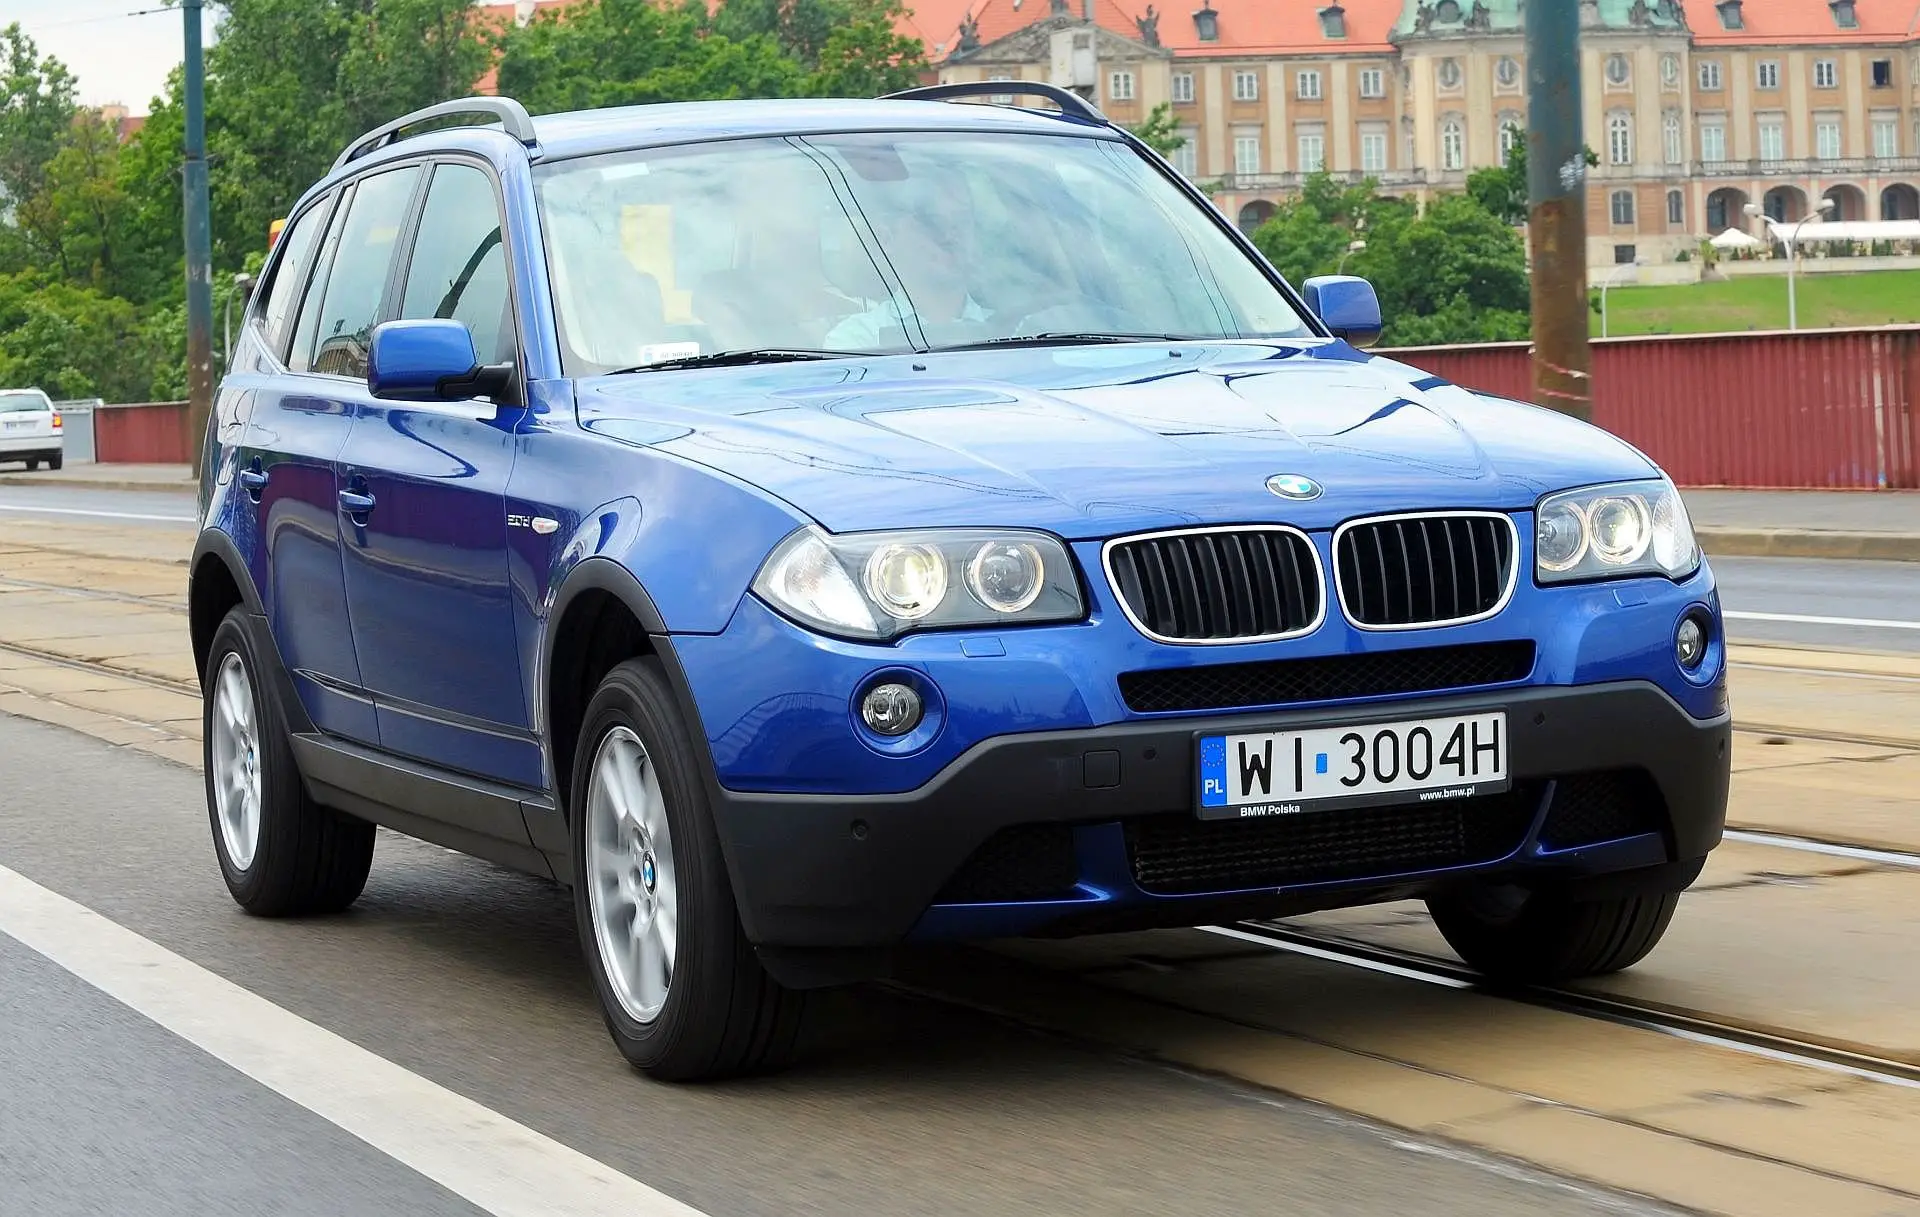 BMW X3 (E83) • Cinghia o Catena?